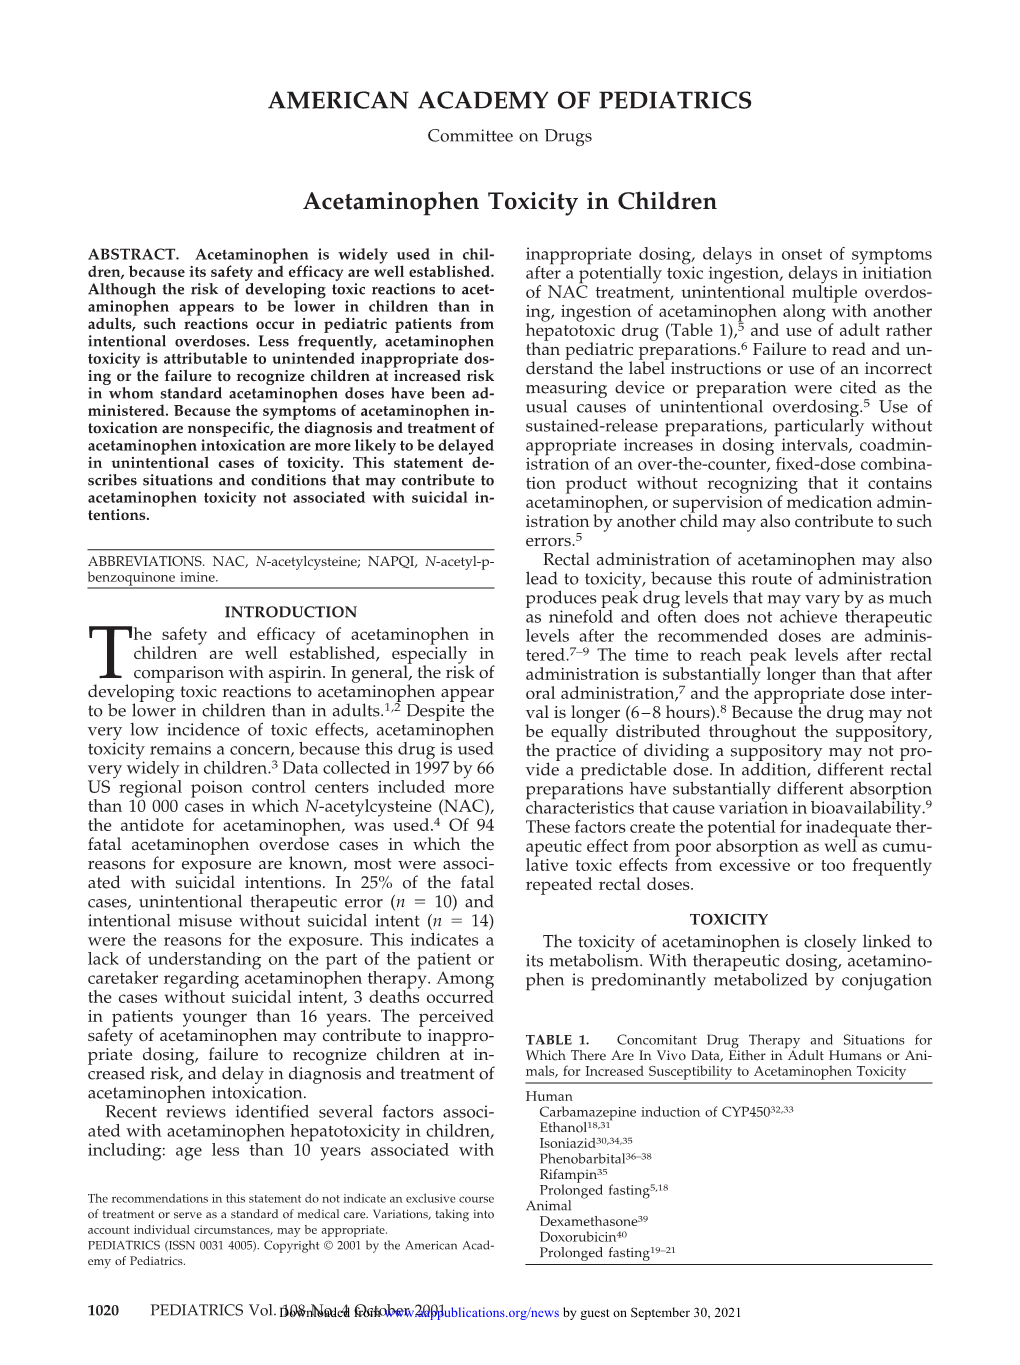 Acetaminophen Toxicity in Children